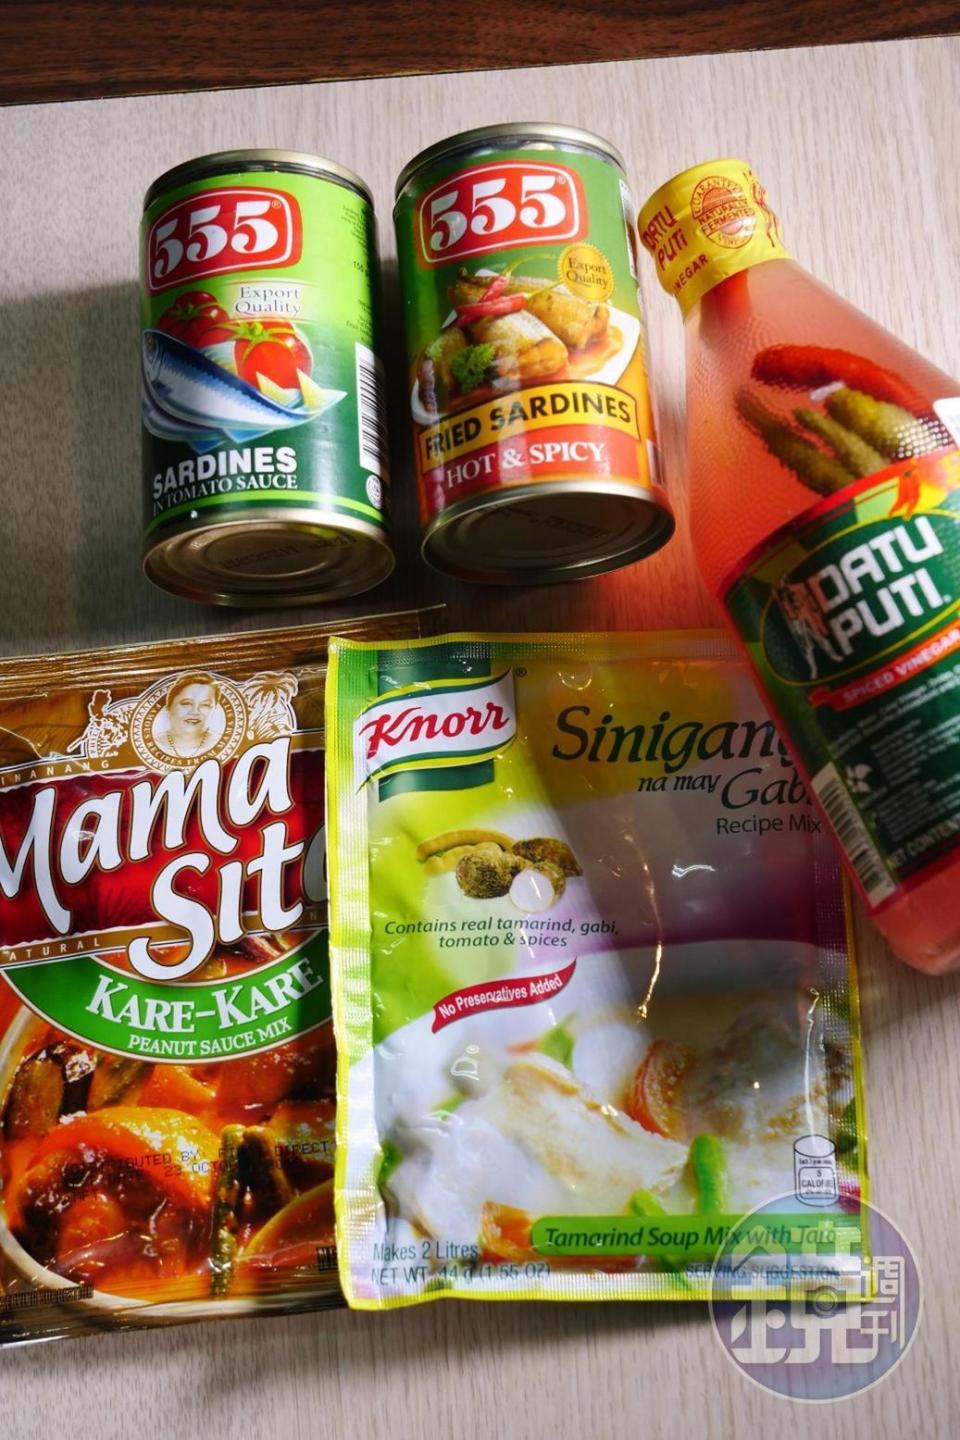 菲律賓的調味料及罐頭，調味包都是用來燉菜煮湯的，圖右的罐裝就是辣椒醋水。